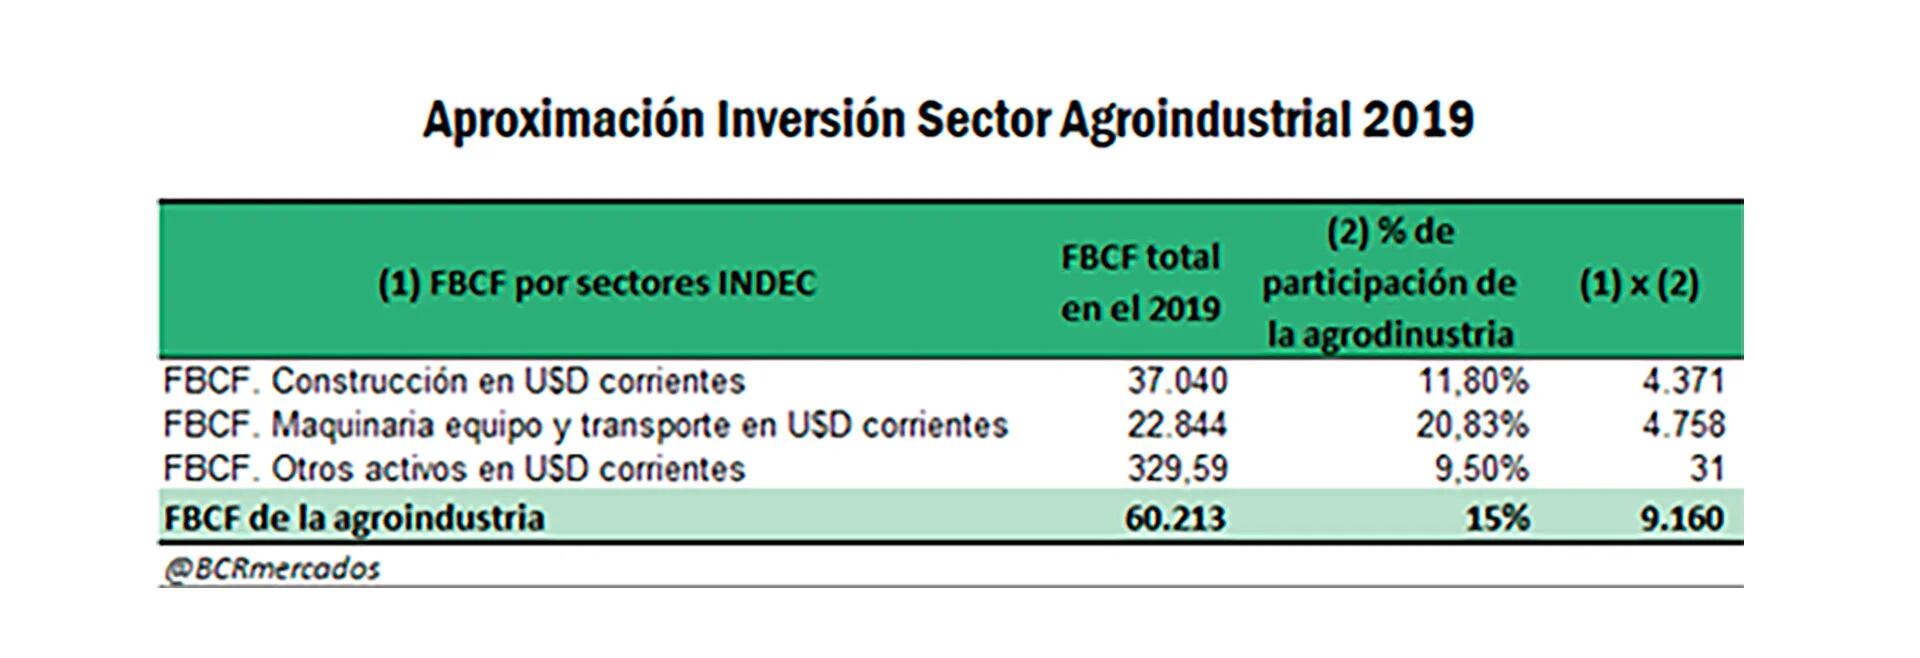 Detalle de la inversión realizada por la agroindustria durante 2019 en construcción, maquinaria y equipos de transporte (Bolsa de Comercio de Rosario)